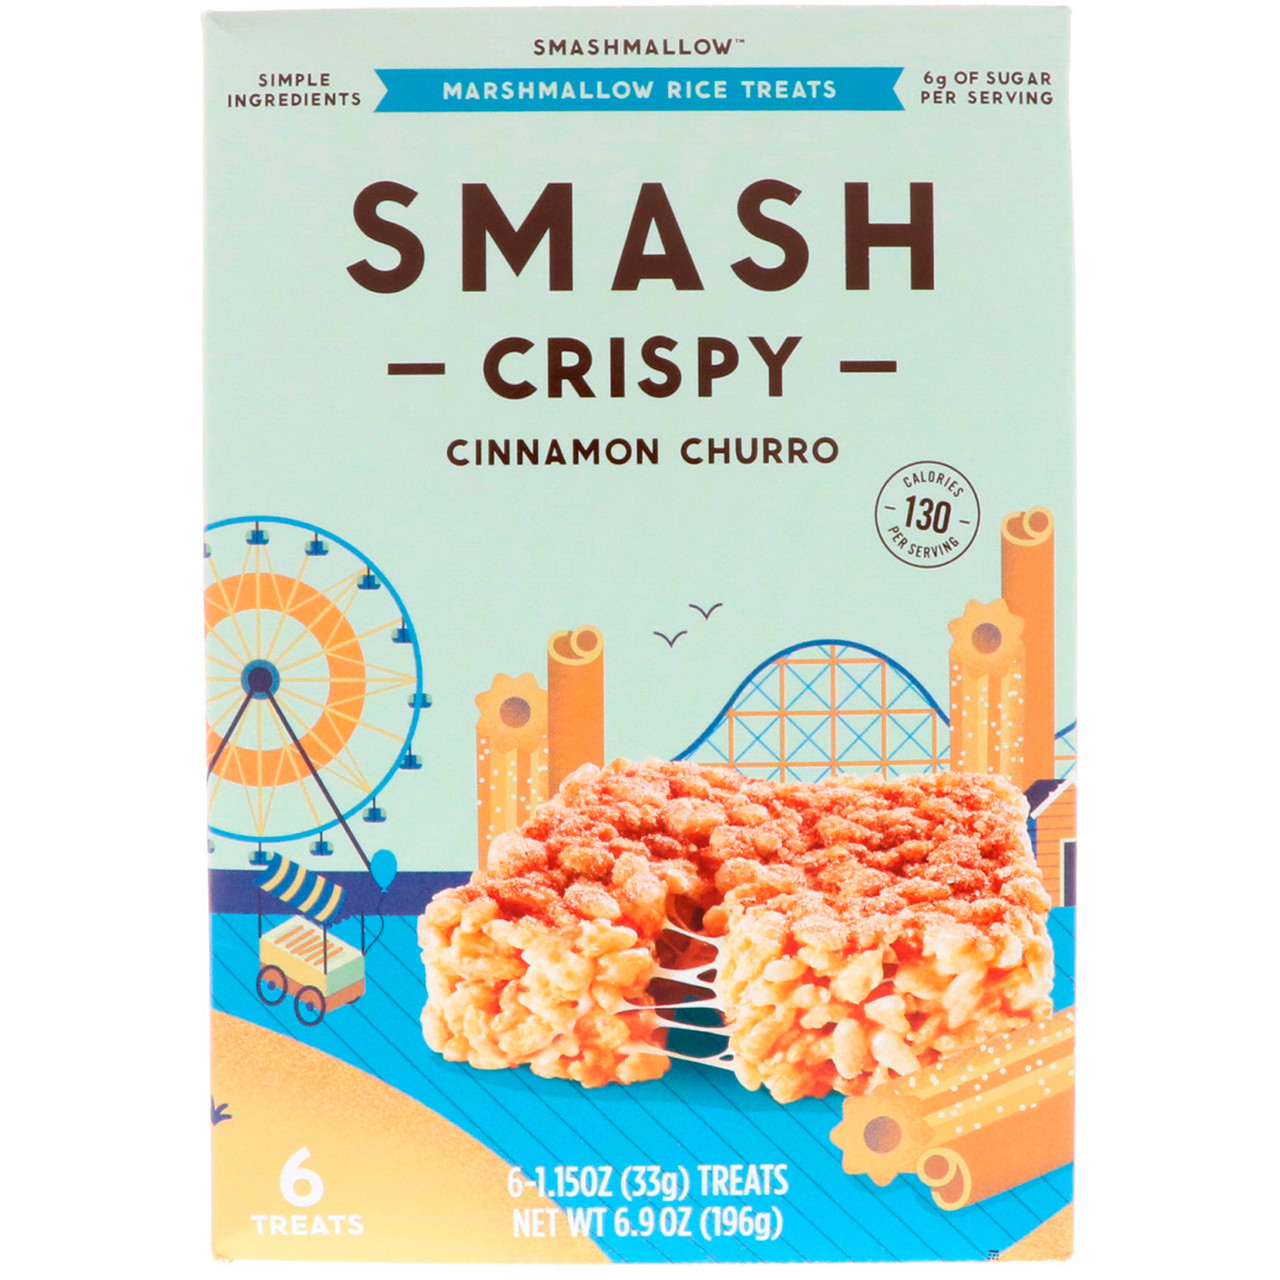 SmashMallow, Smash Crispy, коричний крендель, 6 ласощів, по 33 г кожна